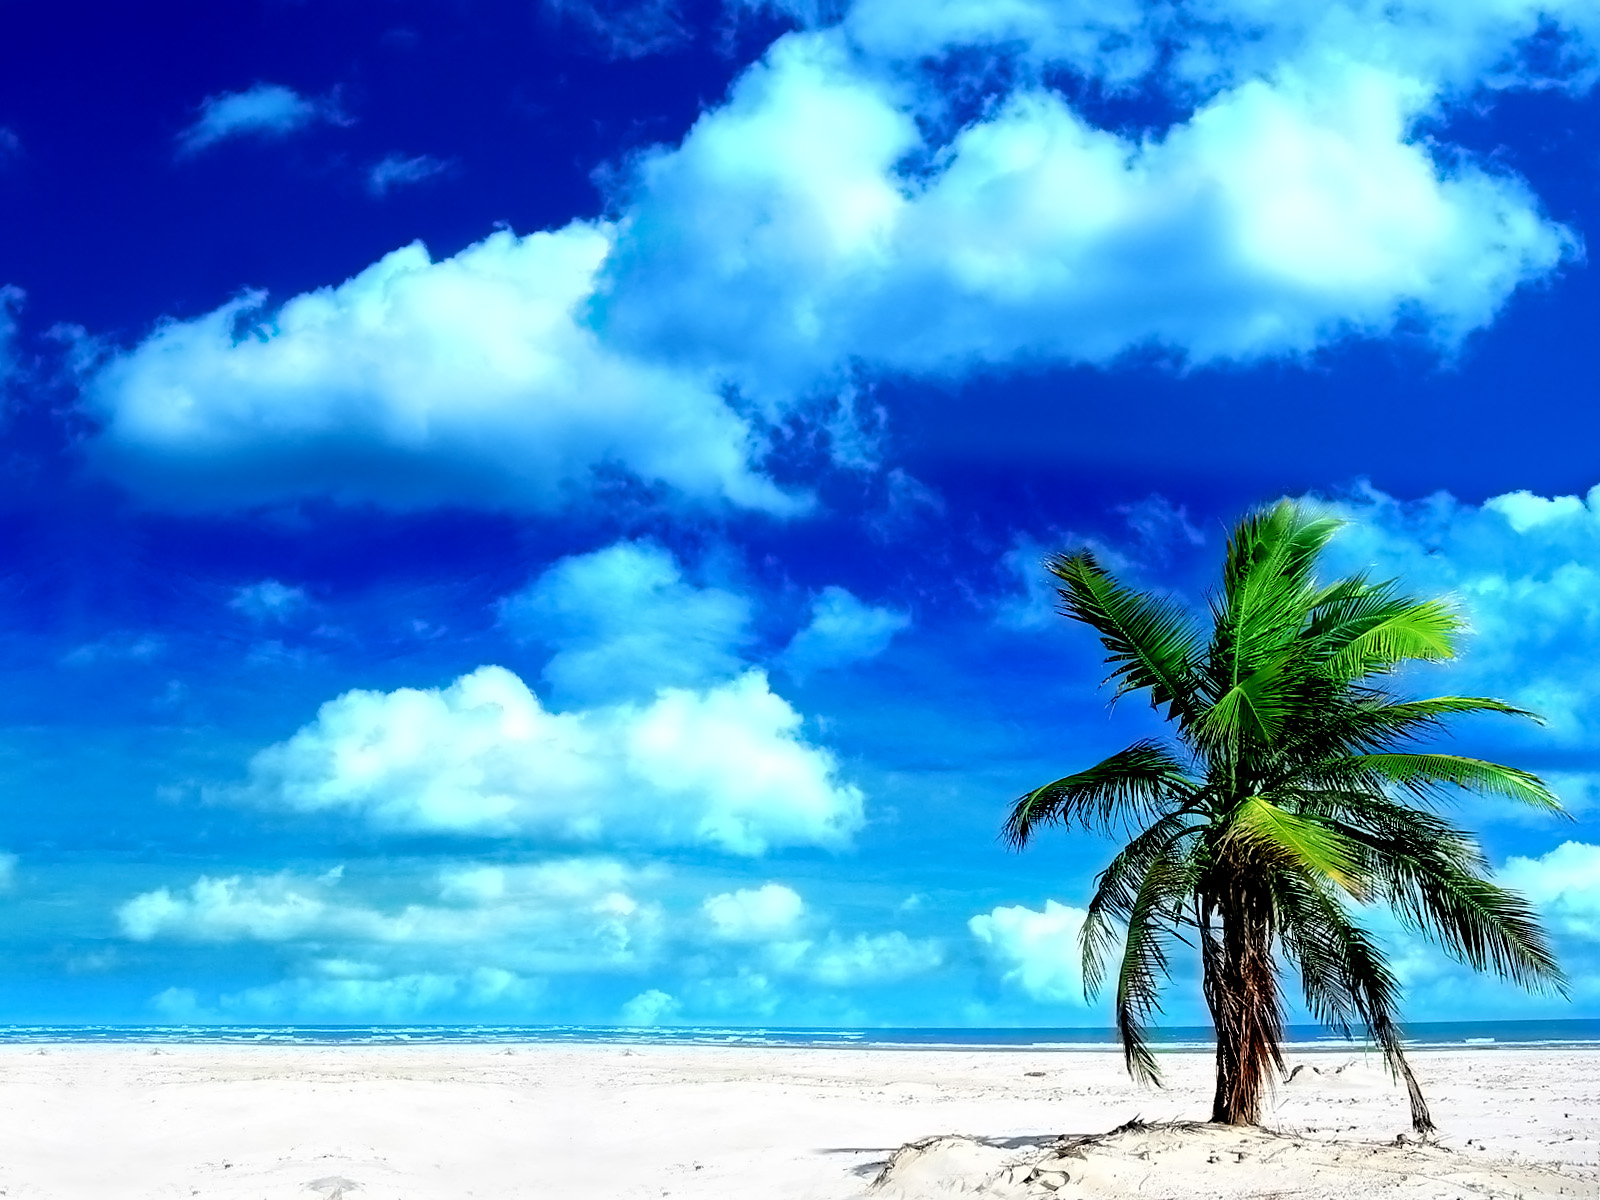 Скачать обои бесплатно Природа, Пляж, Пальма, Тропический, Облако, Земля/природа картинка на рабочий стол ПК